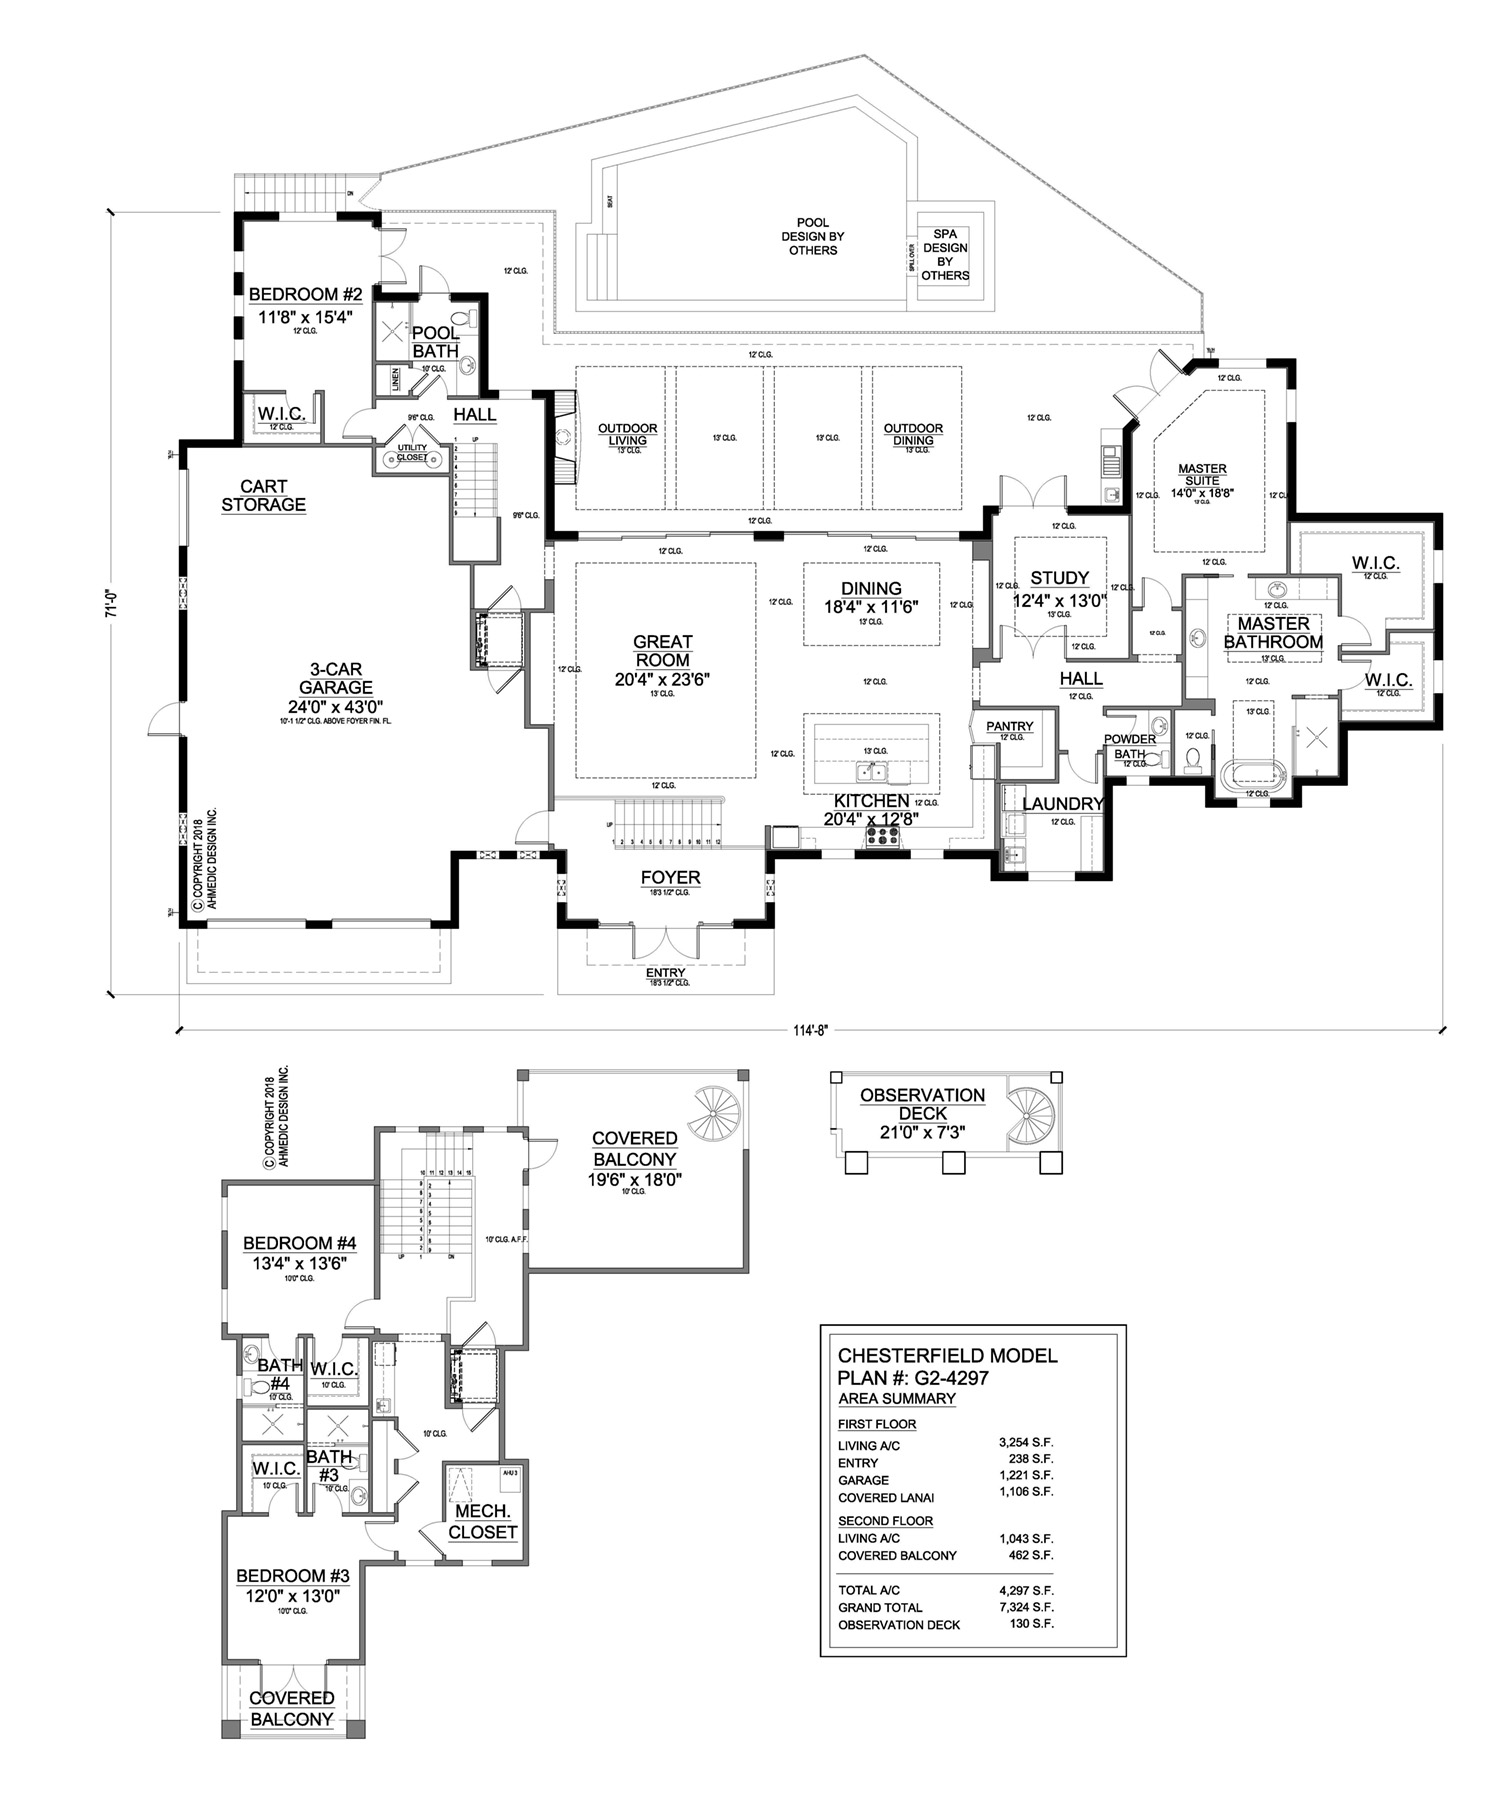 G2-4297 Floor Plan